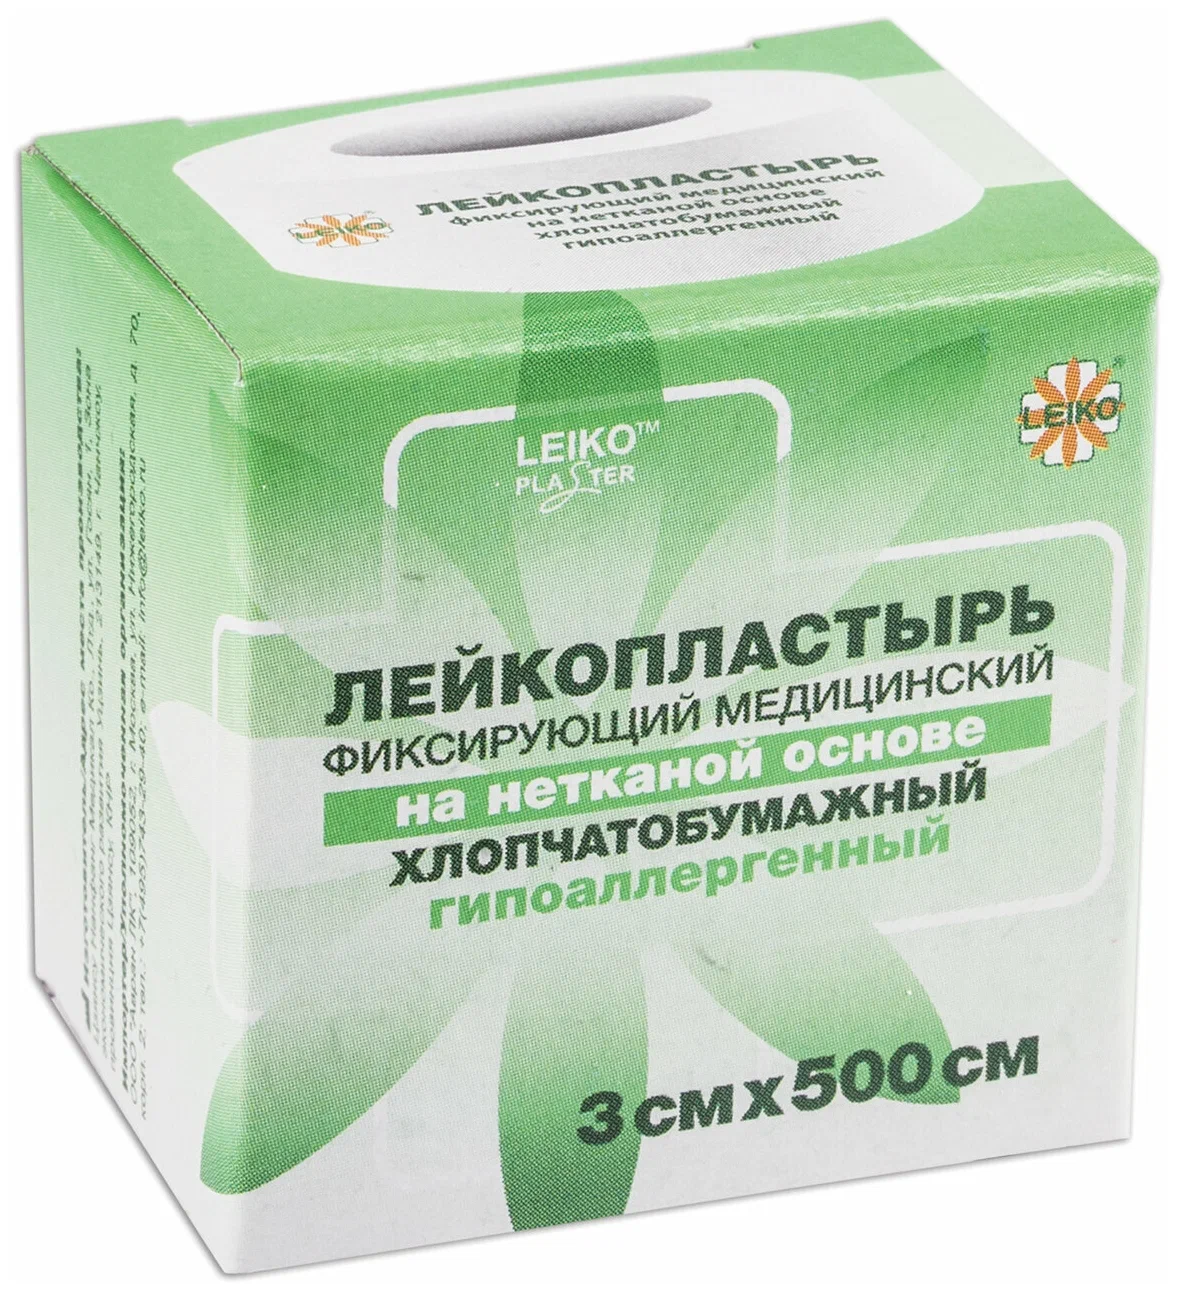 Купить Лейкопластырь медицинский фиксирующий LEIKO в рулоне 2х500 см, на нетканой основе, 12 шт, бежевый